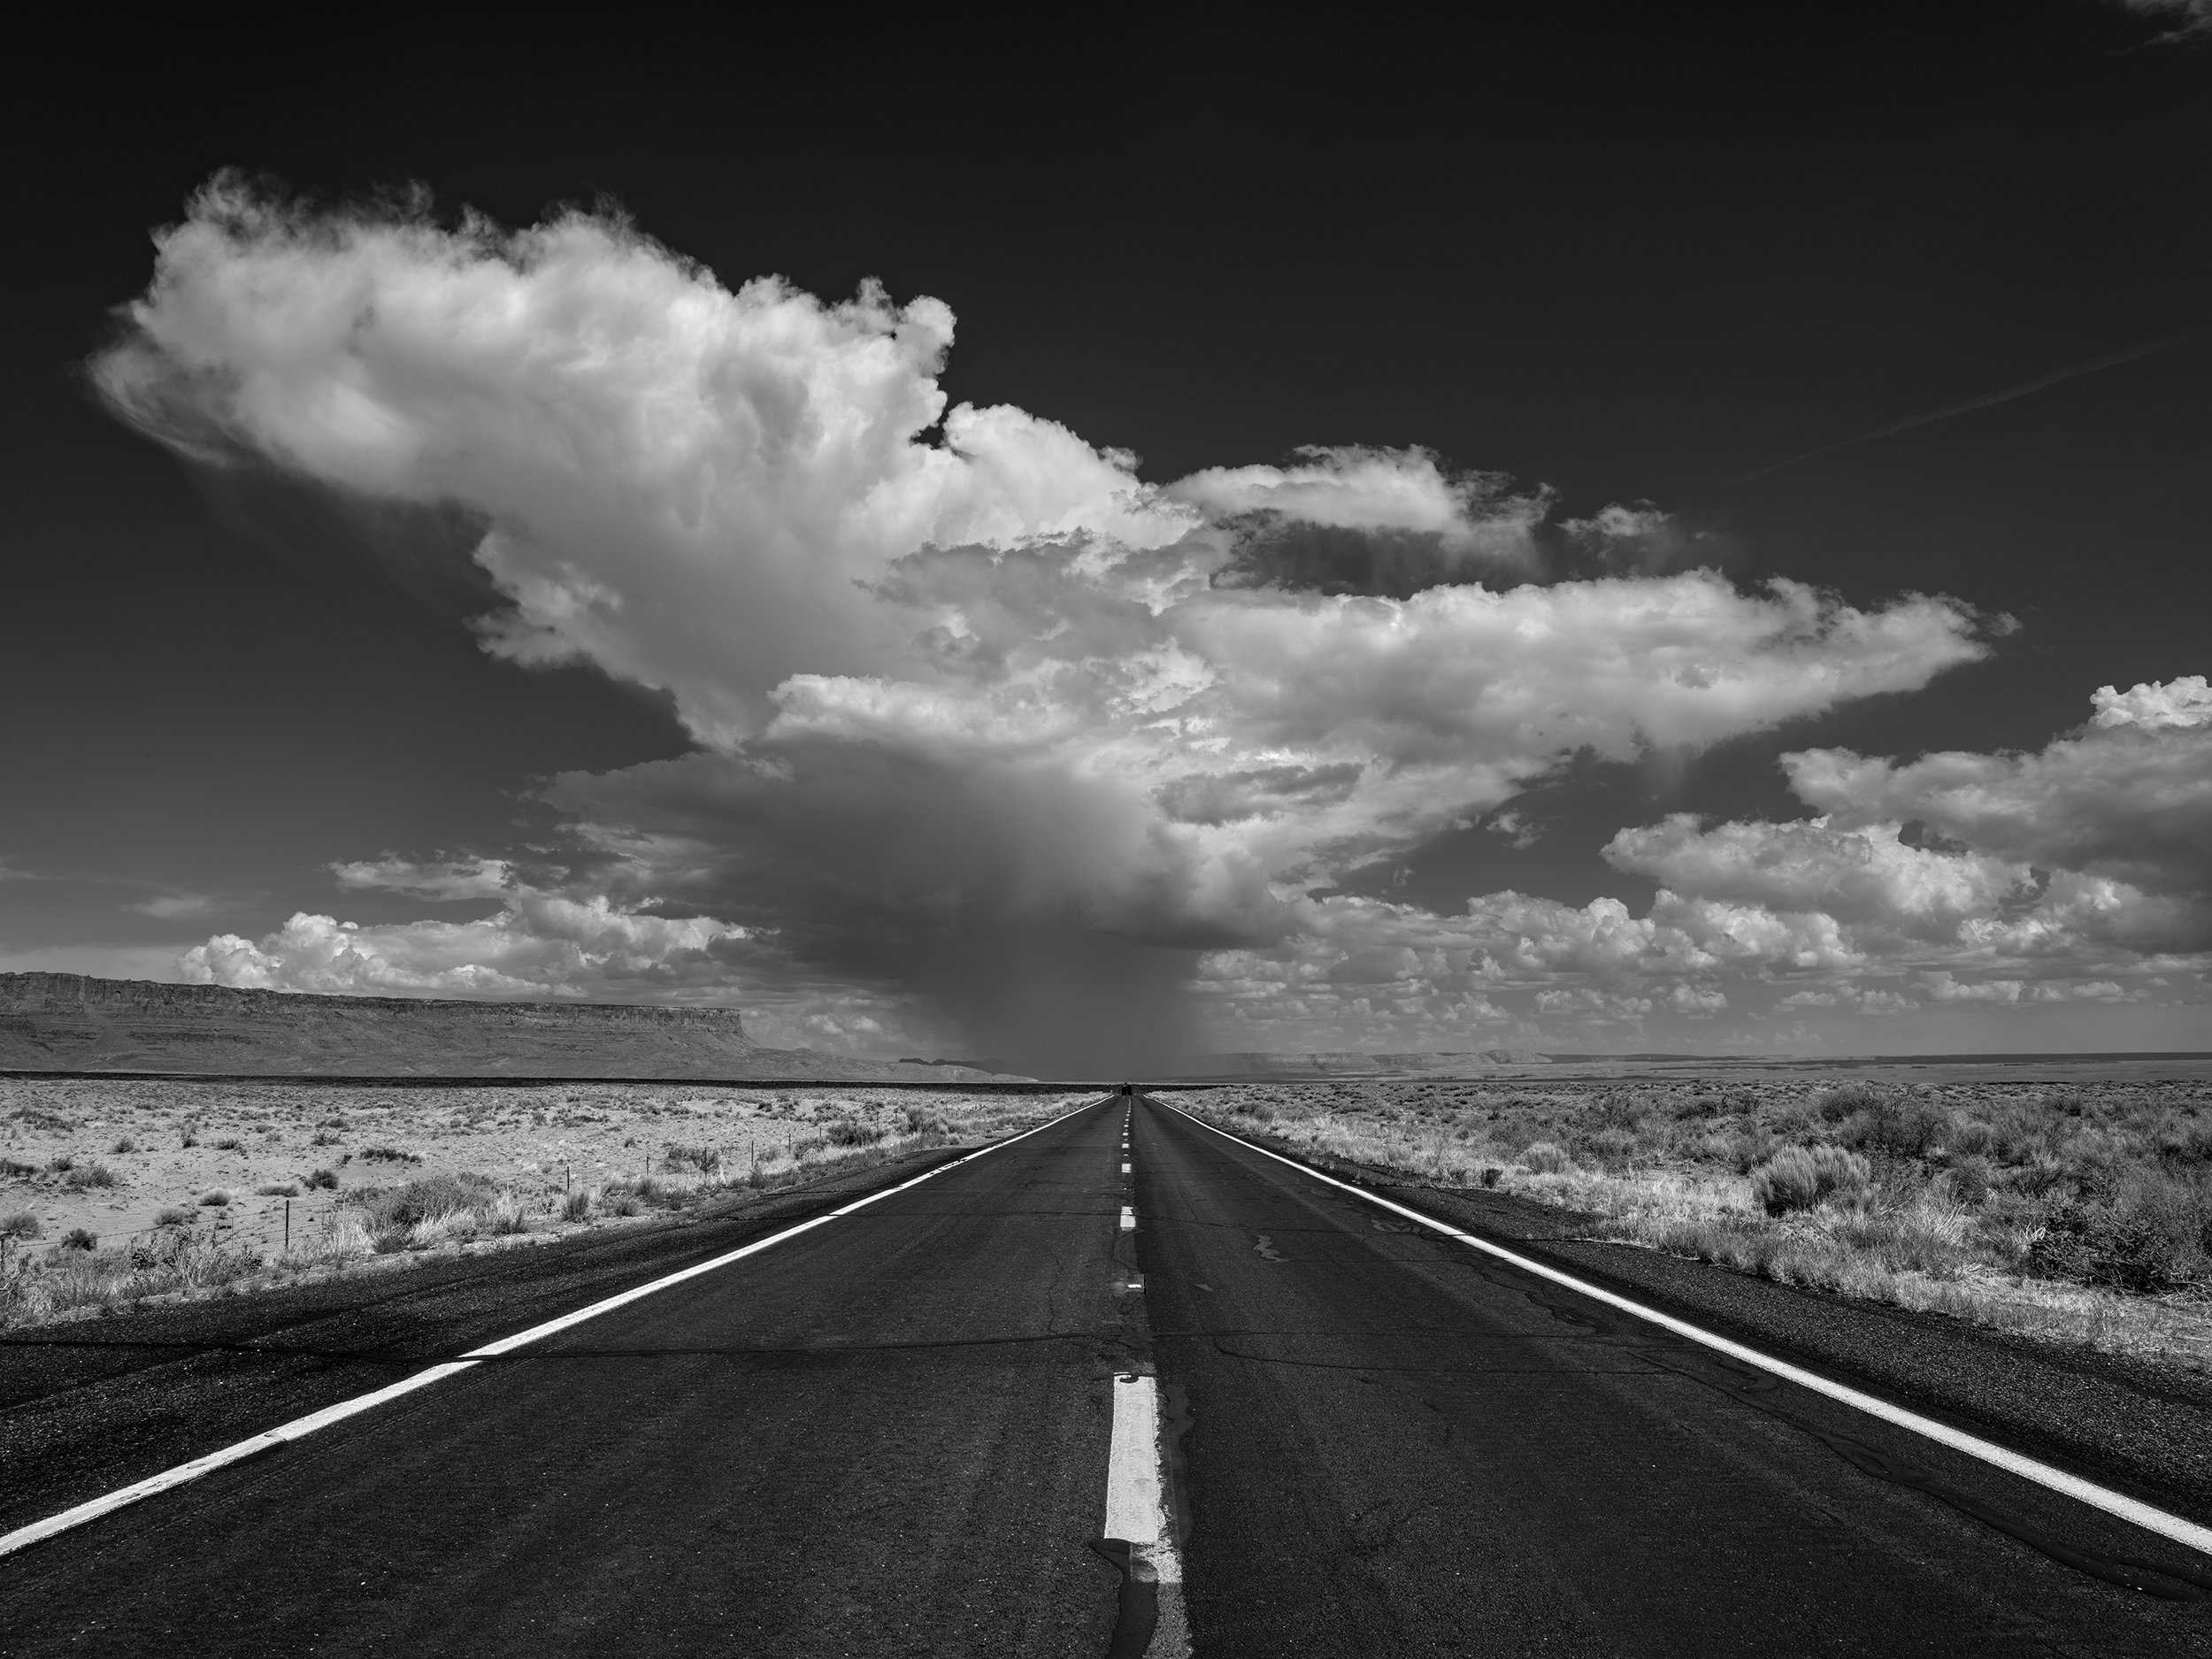  U.S. Highway 89 #2. Arizona. July 27, 2021 